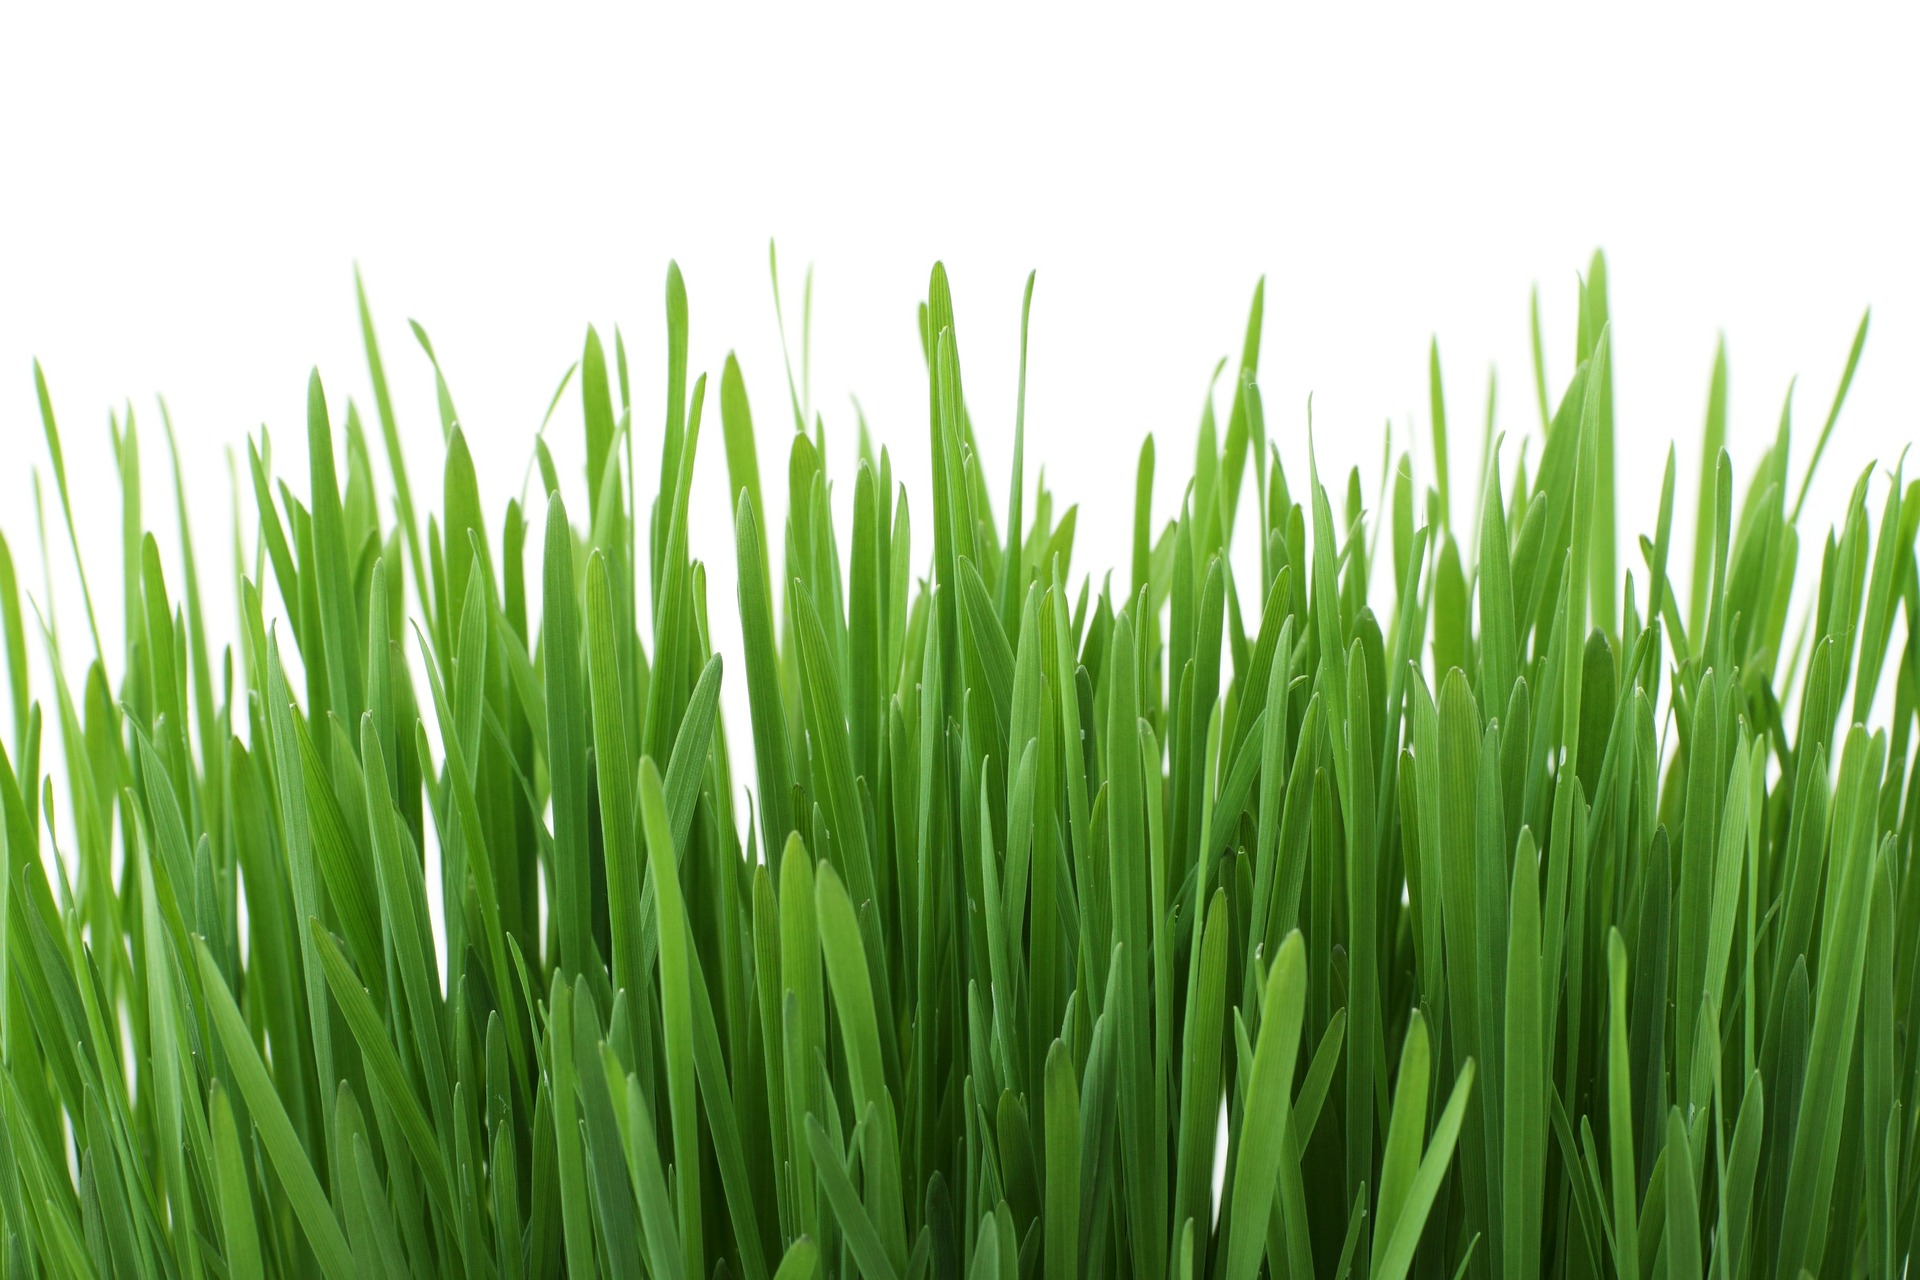 Rasen düngen im Frühjahr - Eine Anleitung